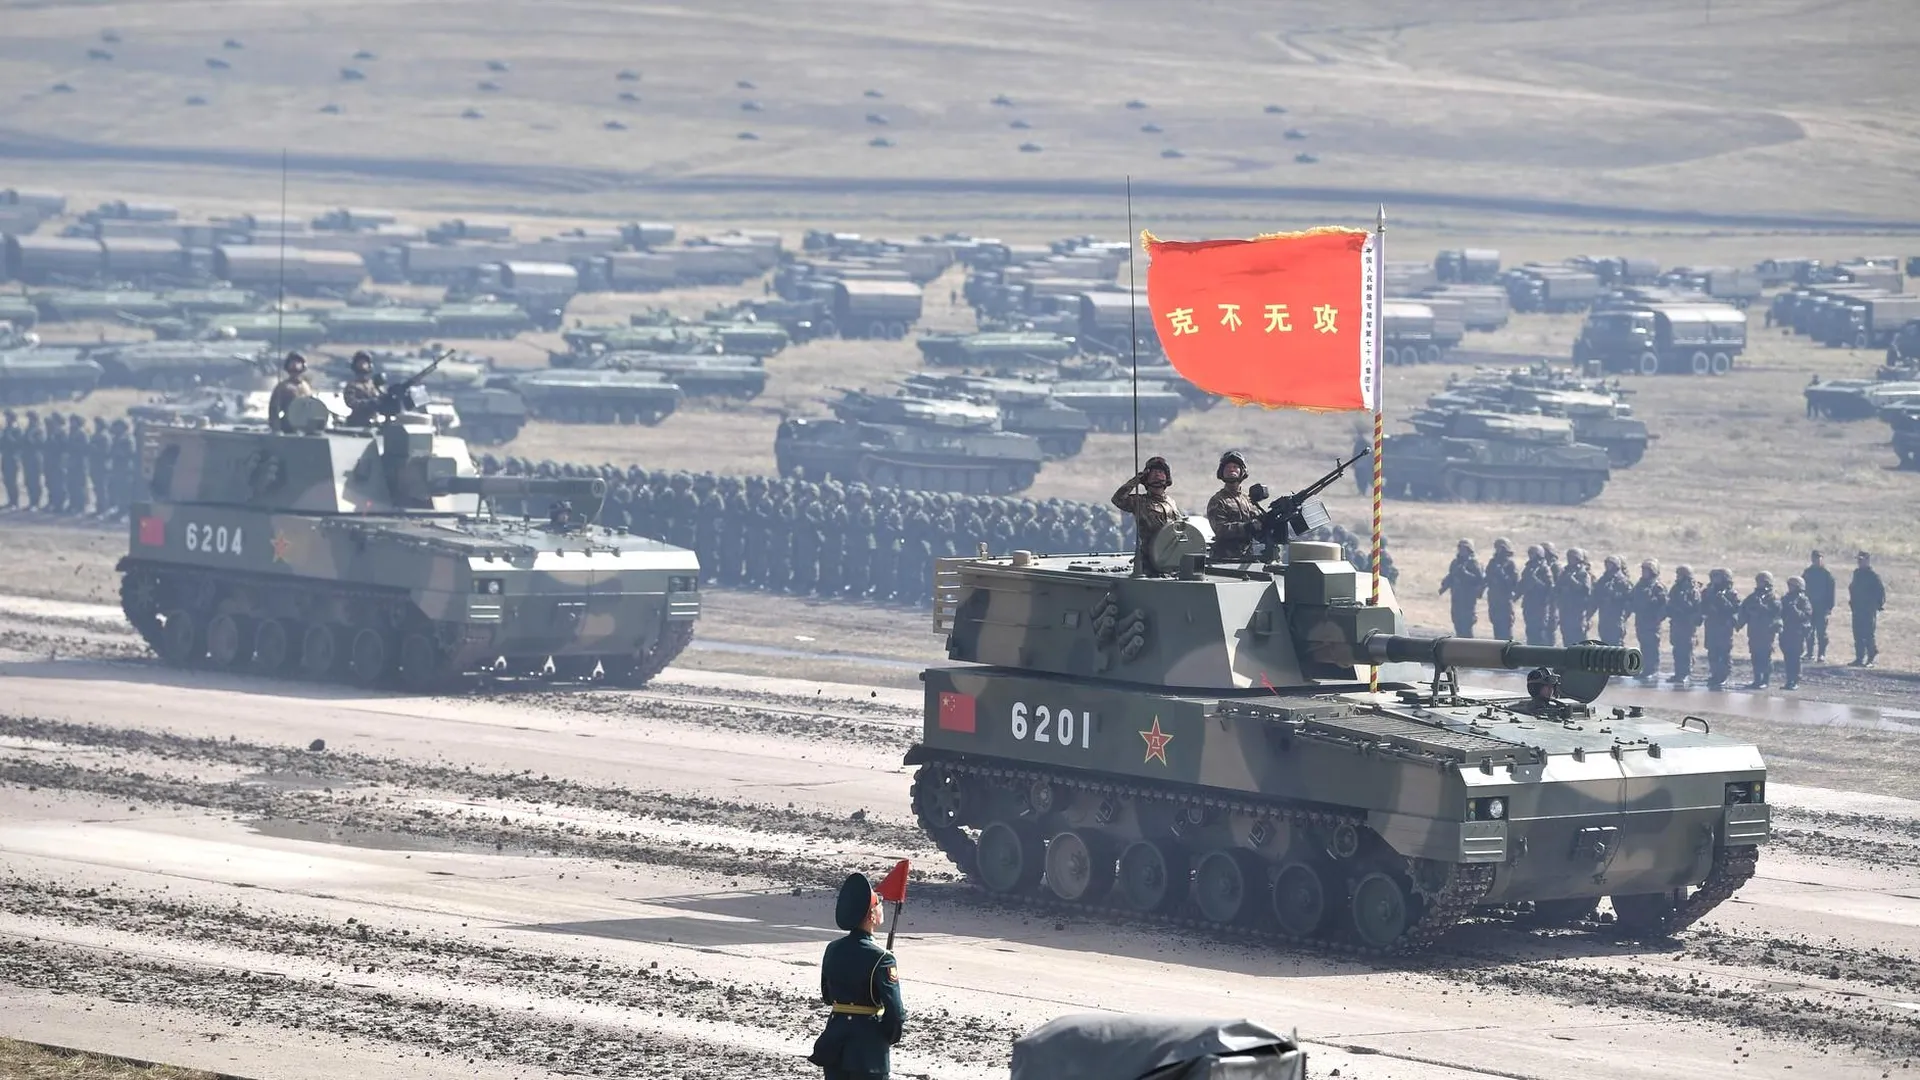 К битве готовы: каково соотношение военных потенциалов Китая и США